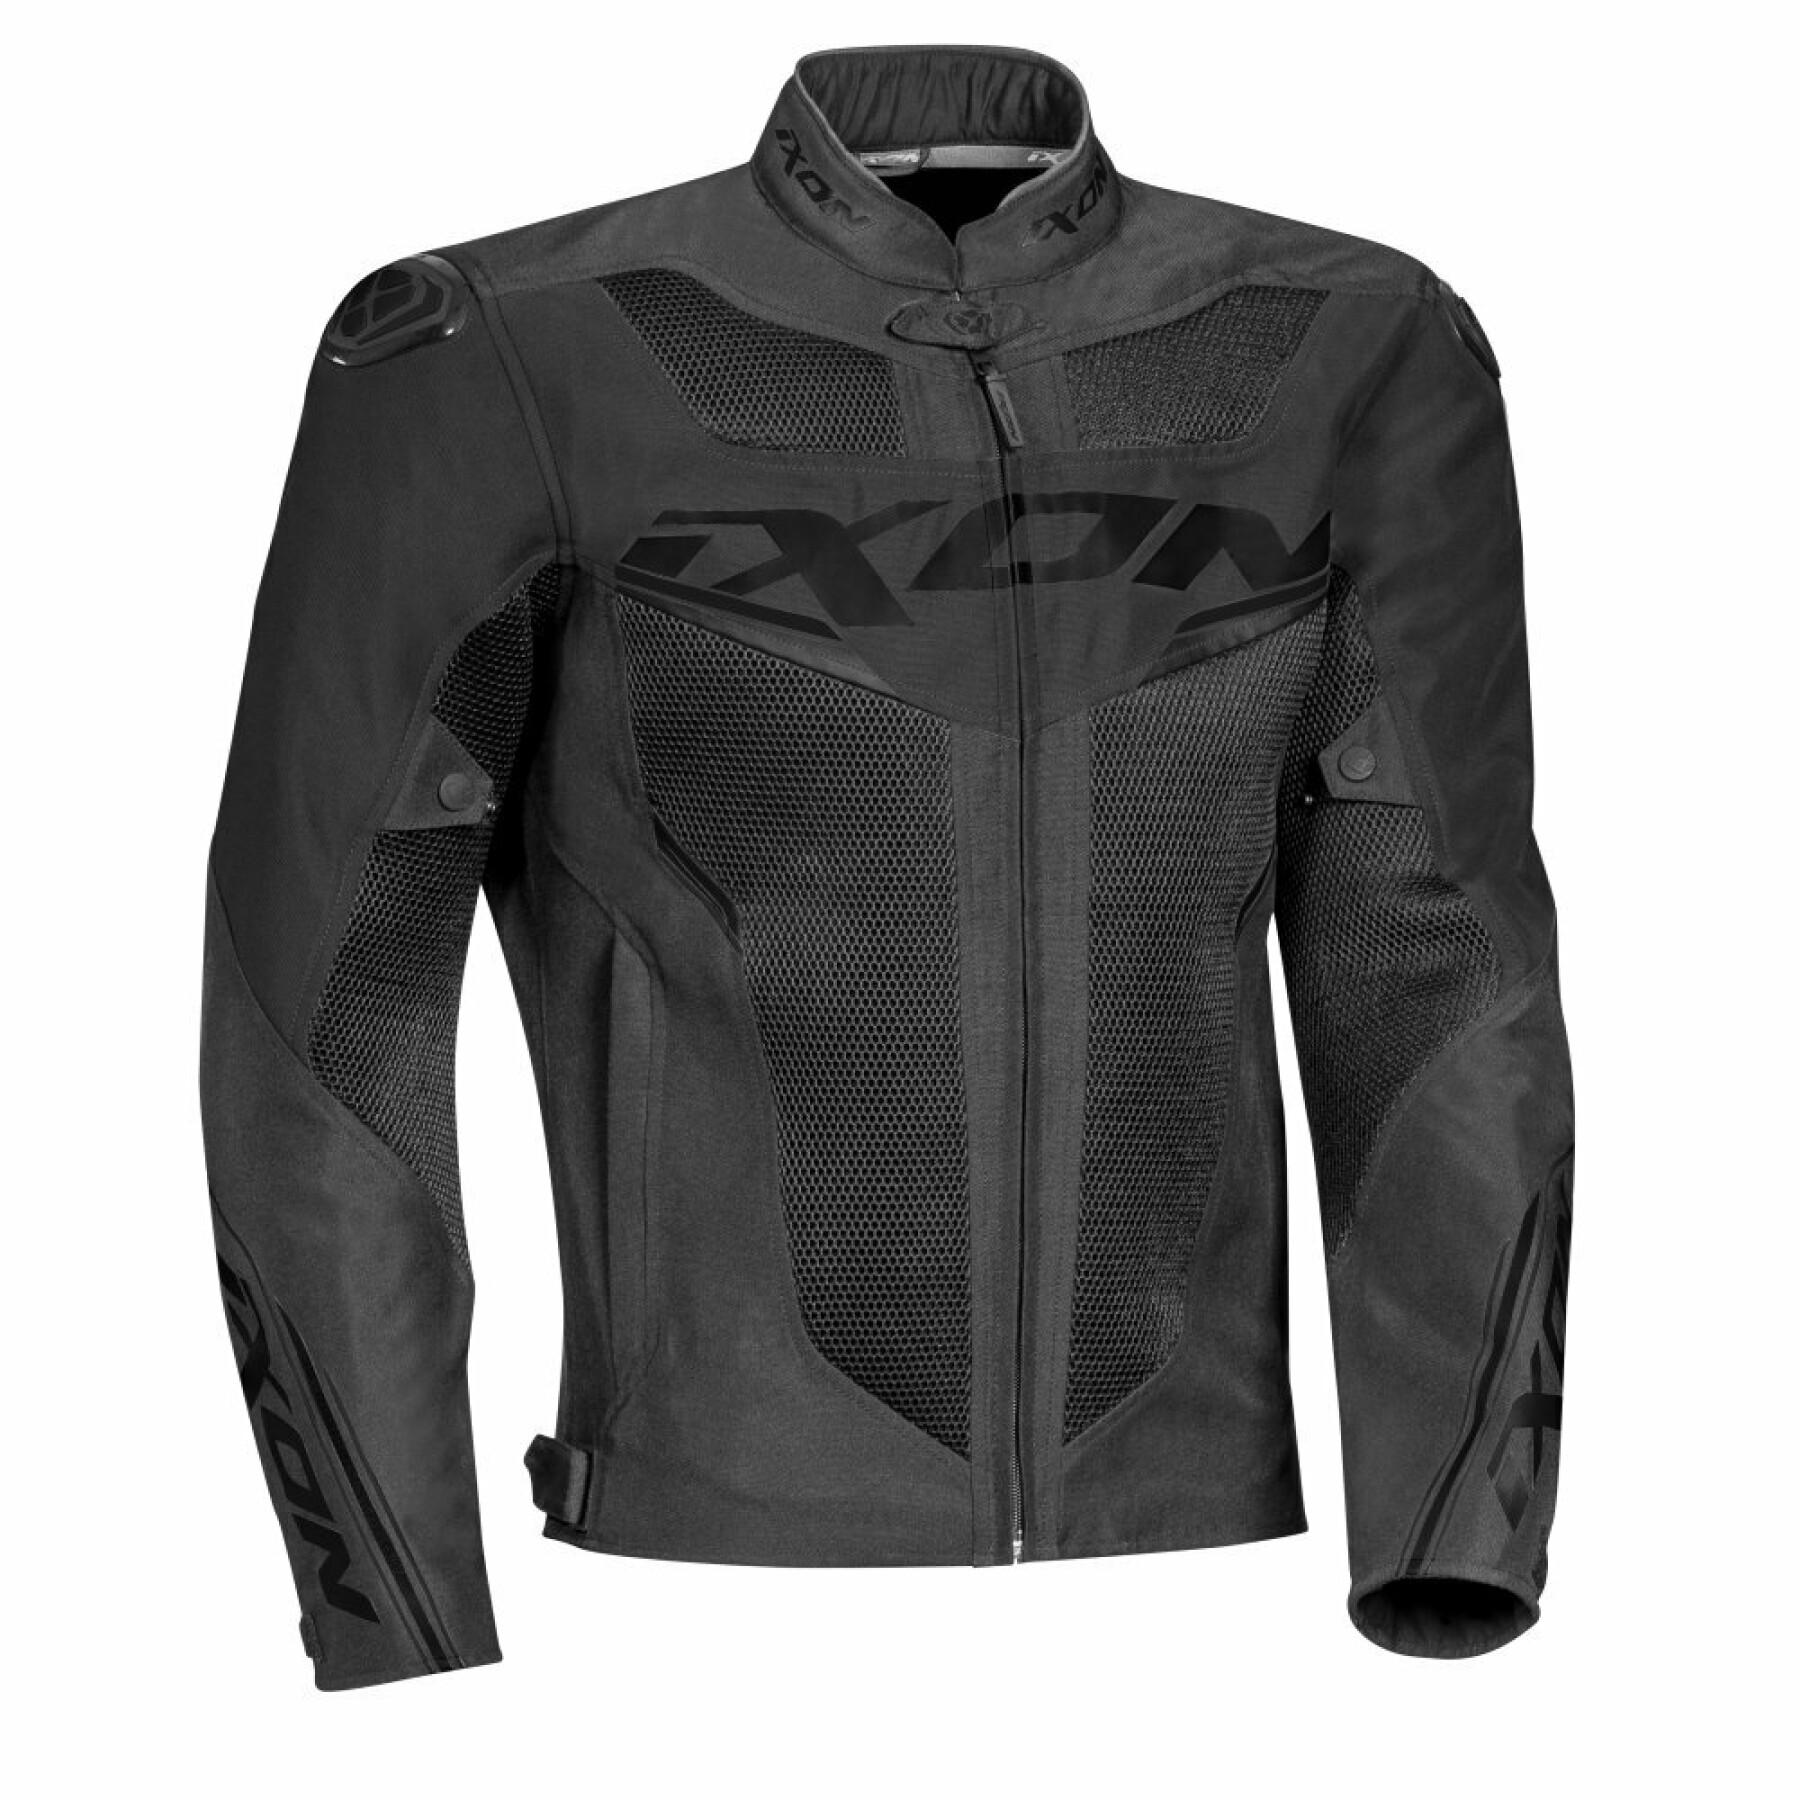 Motorcycle jacket Ixon draco